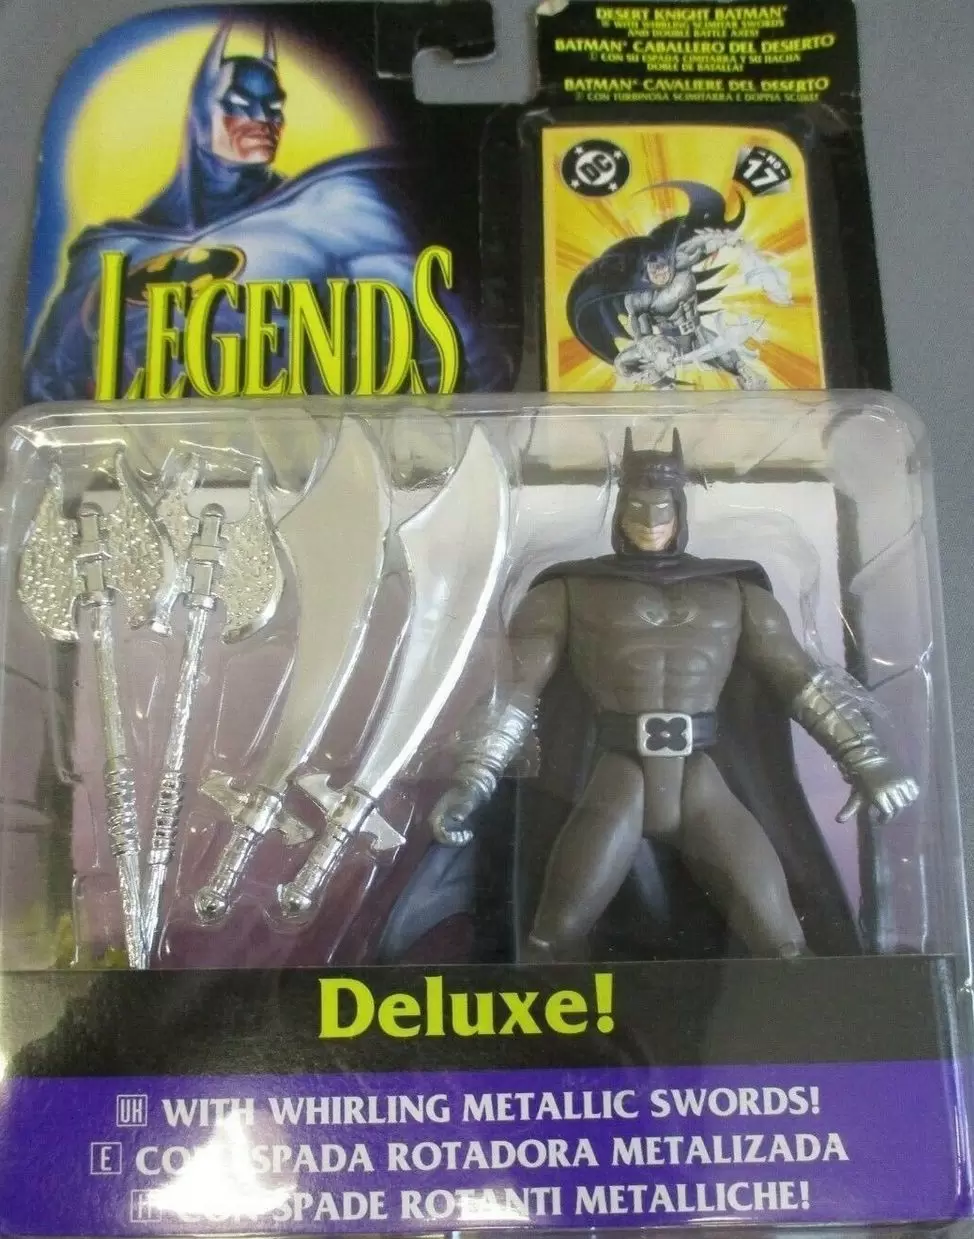 Legends of Batman - Desert Knight Batman